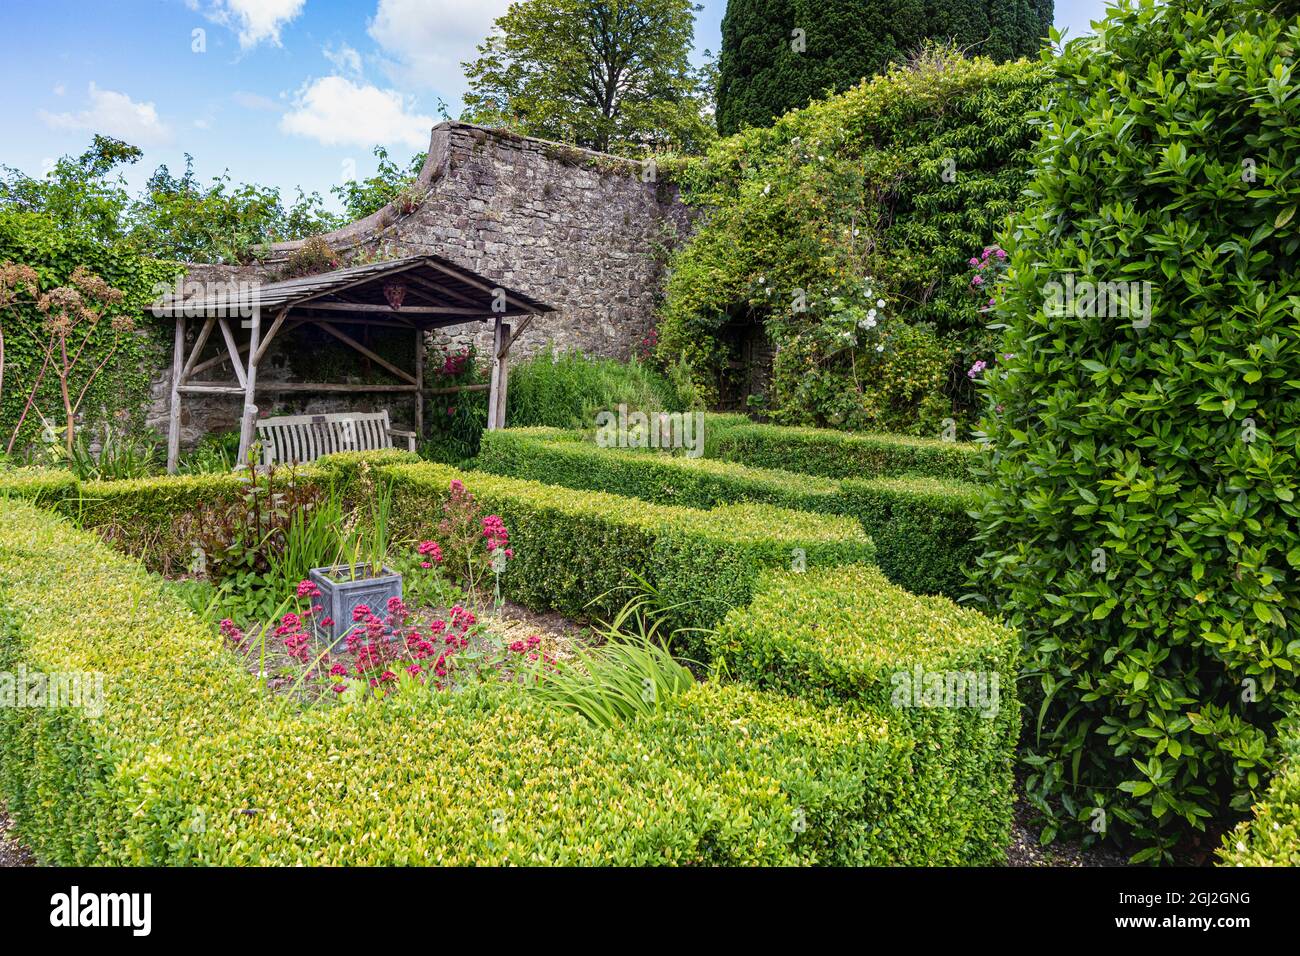 Ruhe und Frieden: Schlosshügel-Gartenlandschaft mit schattigem Sitz. Bild von einem der ruhigen Gartengebiete in der Great Torrington Community Area. Stockfoto